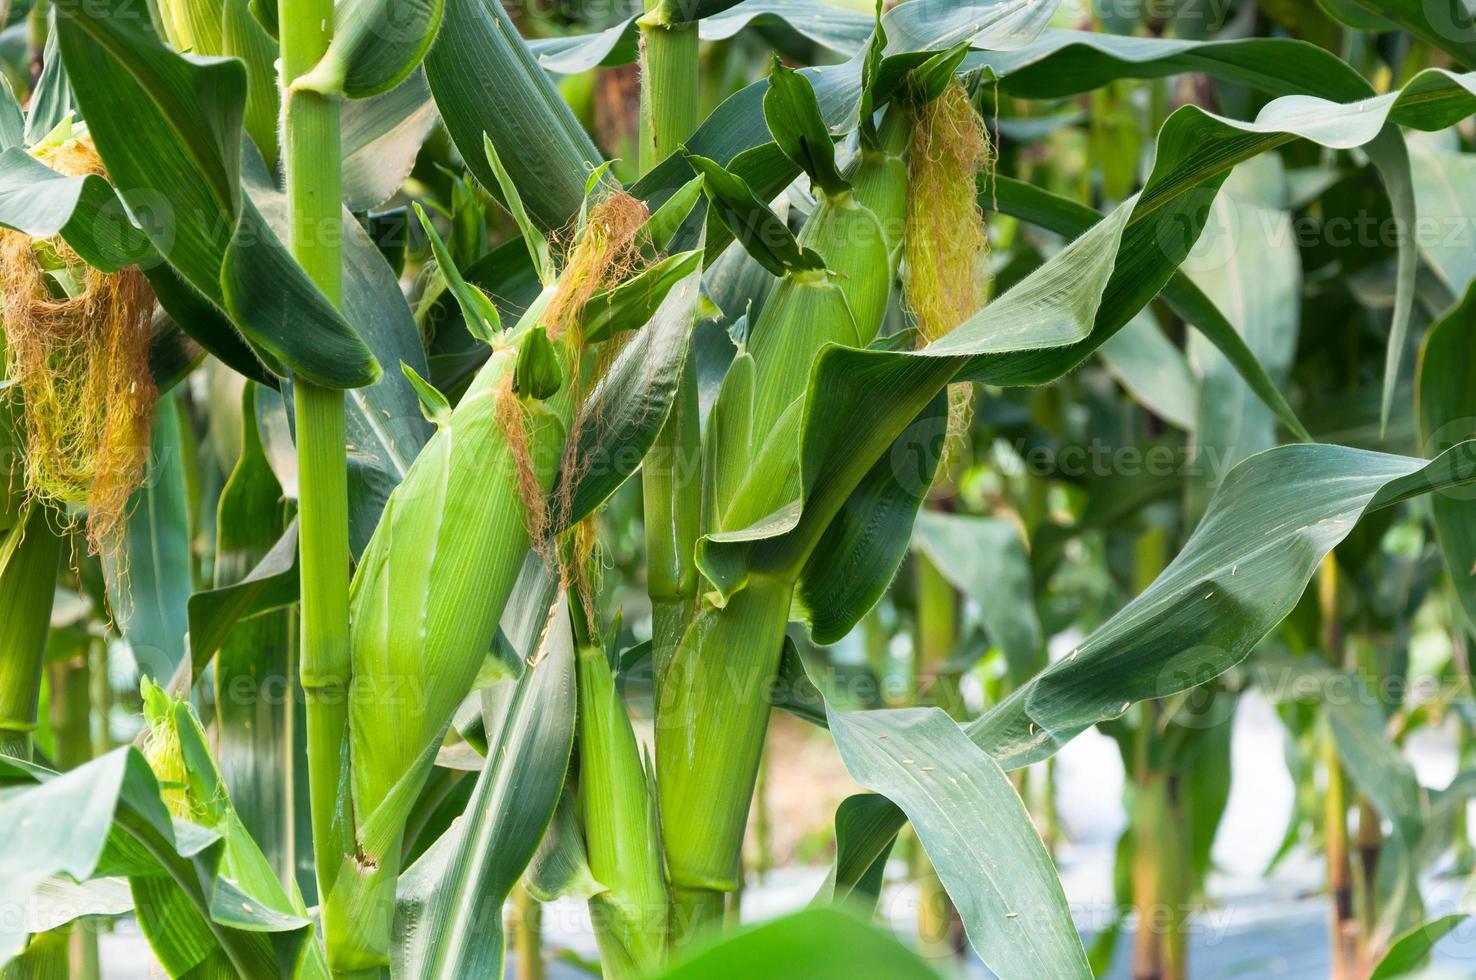 cierre de plantas de maíz fresco con campo de maíz, maíz verde en la agricultura de campo, mazorcas de maíz en tallos en el campo agrícola foto